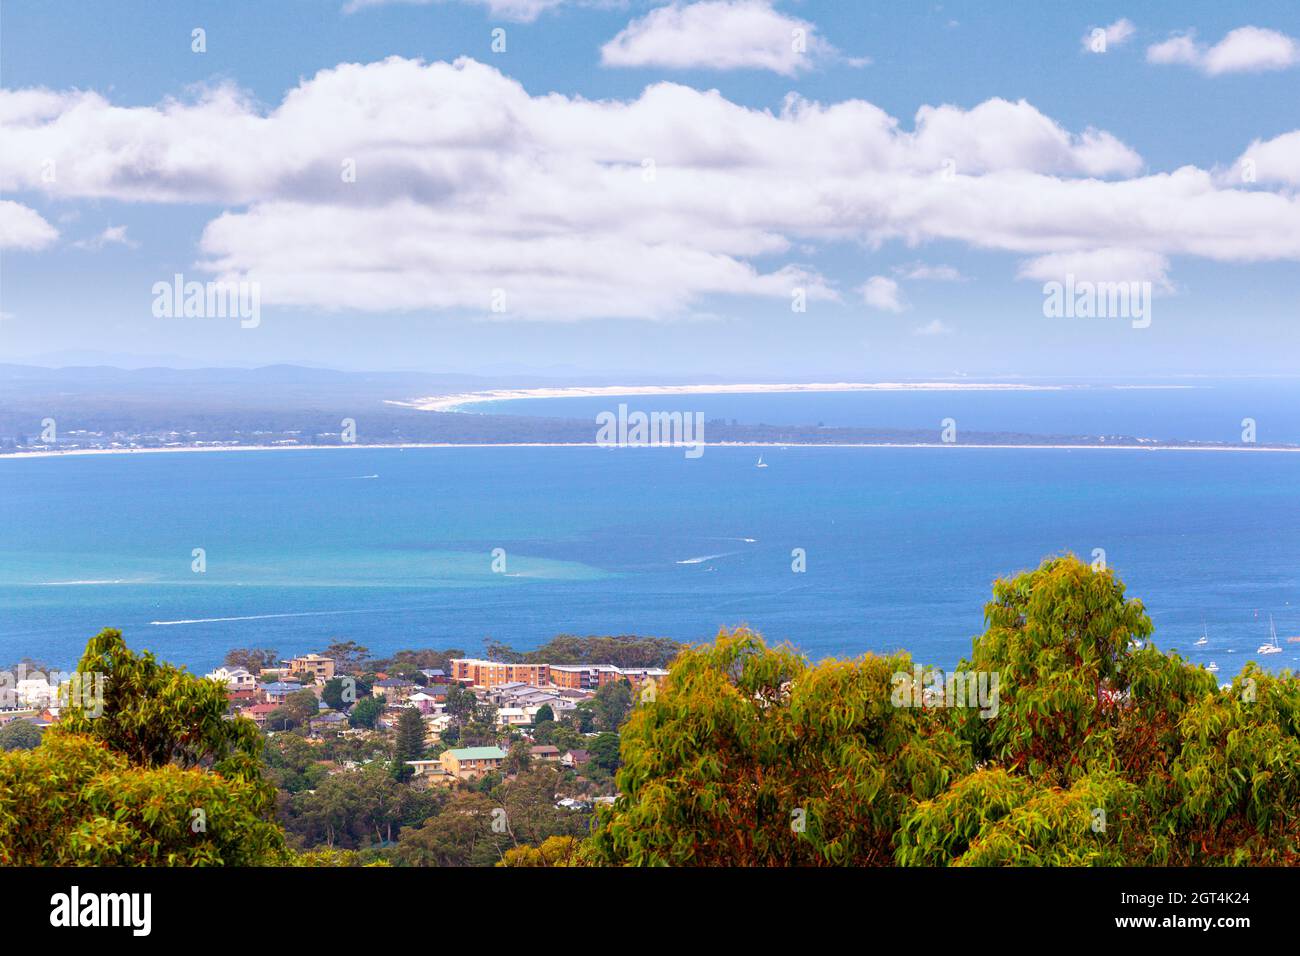 Vista de la bahía Nelson en el brillante día de verano desde el mirador de Gan Gan. Nelson Bay, Nueva Gales del Sur, Australia Foto de stock